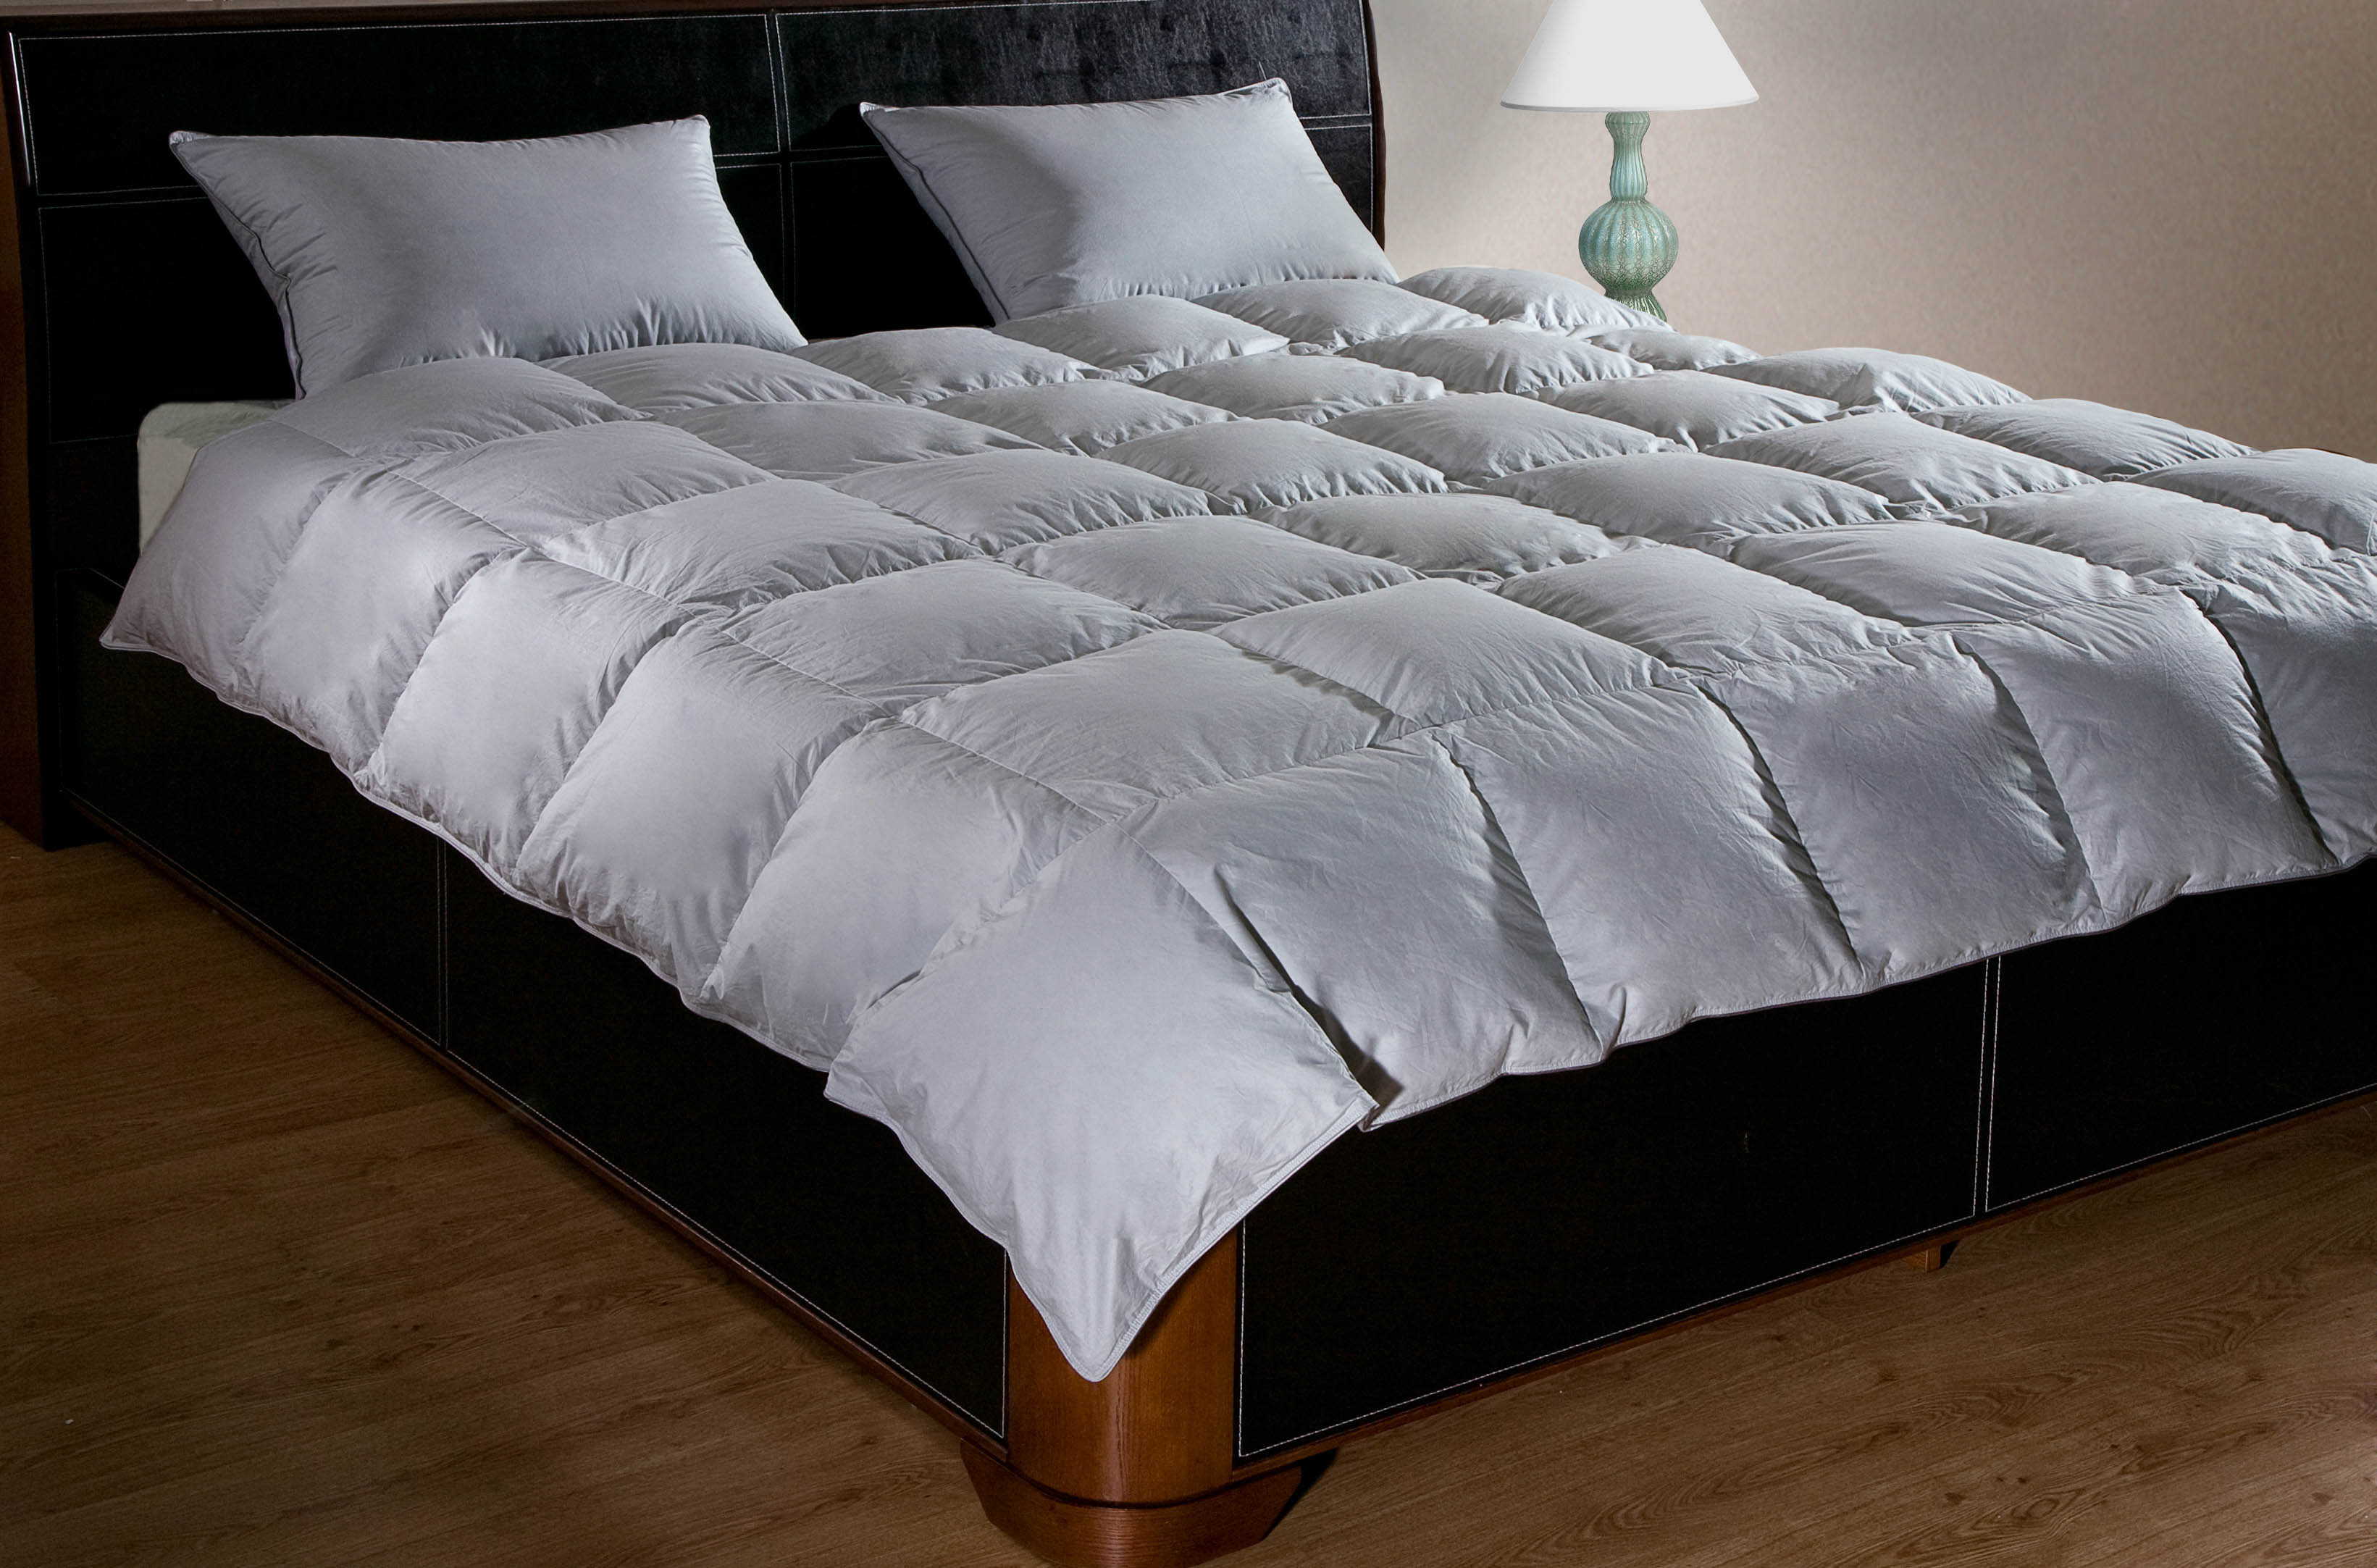 Одеяло Cream Цвет: Серый (200х220 см), размер 200х220 см pve319291 Одеяло Cream Цвет: Серый (200х220 см) - фото 1